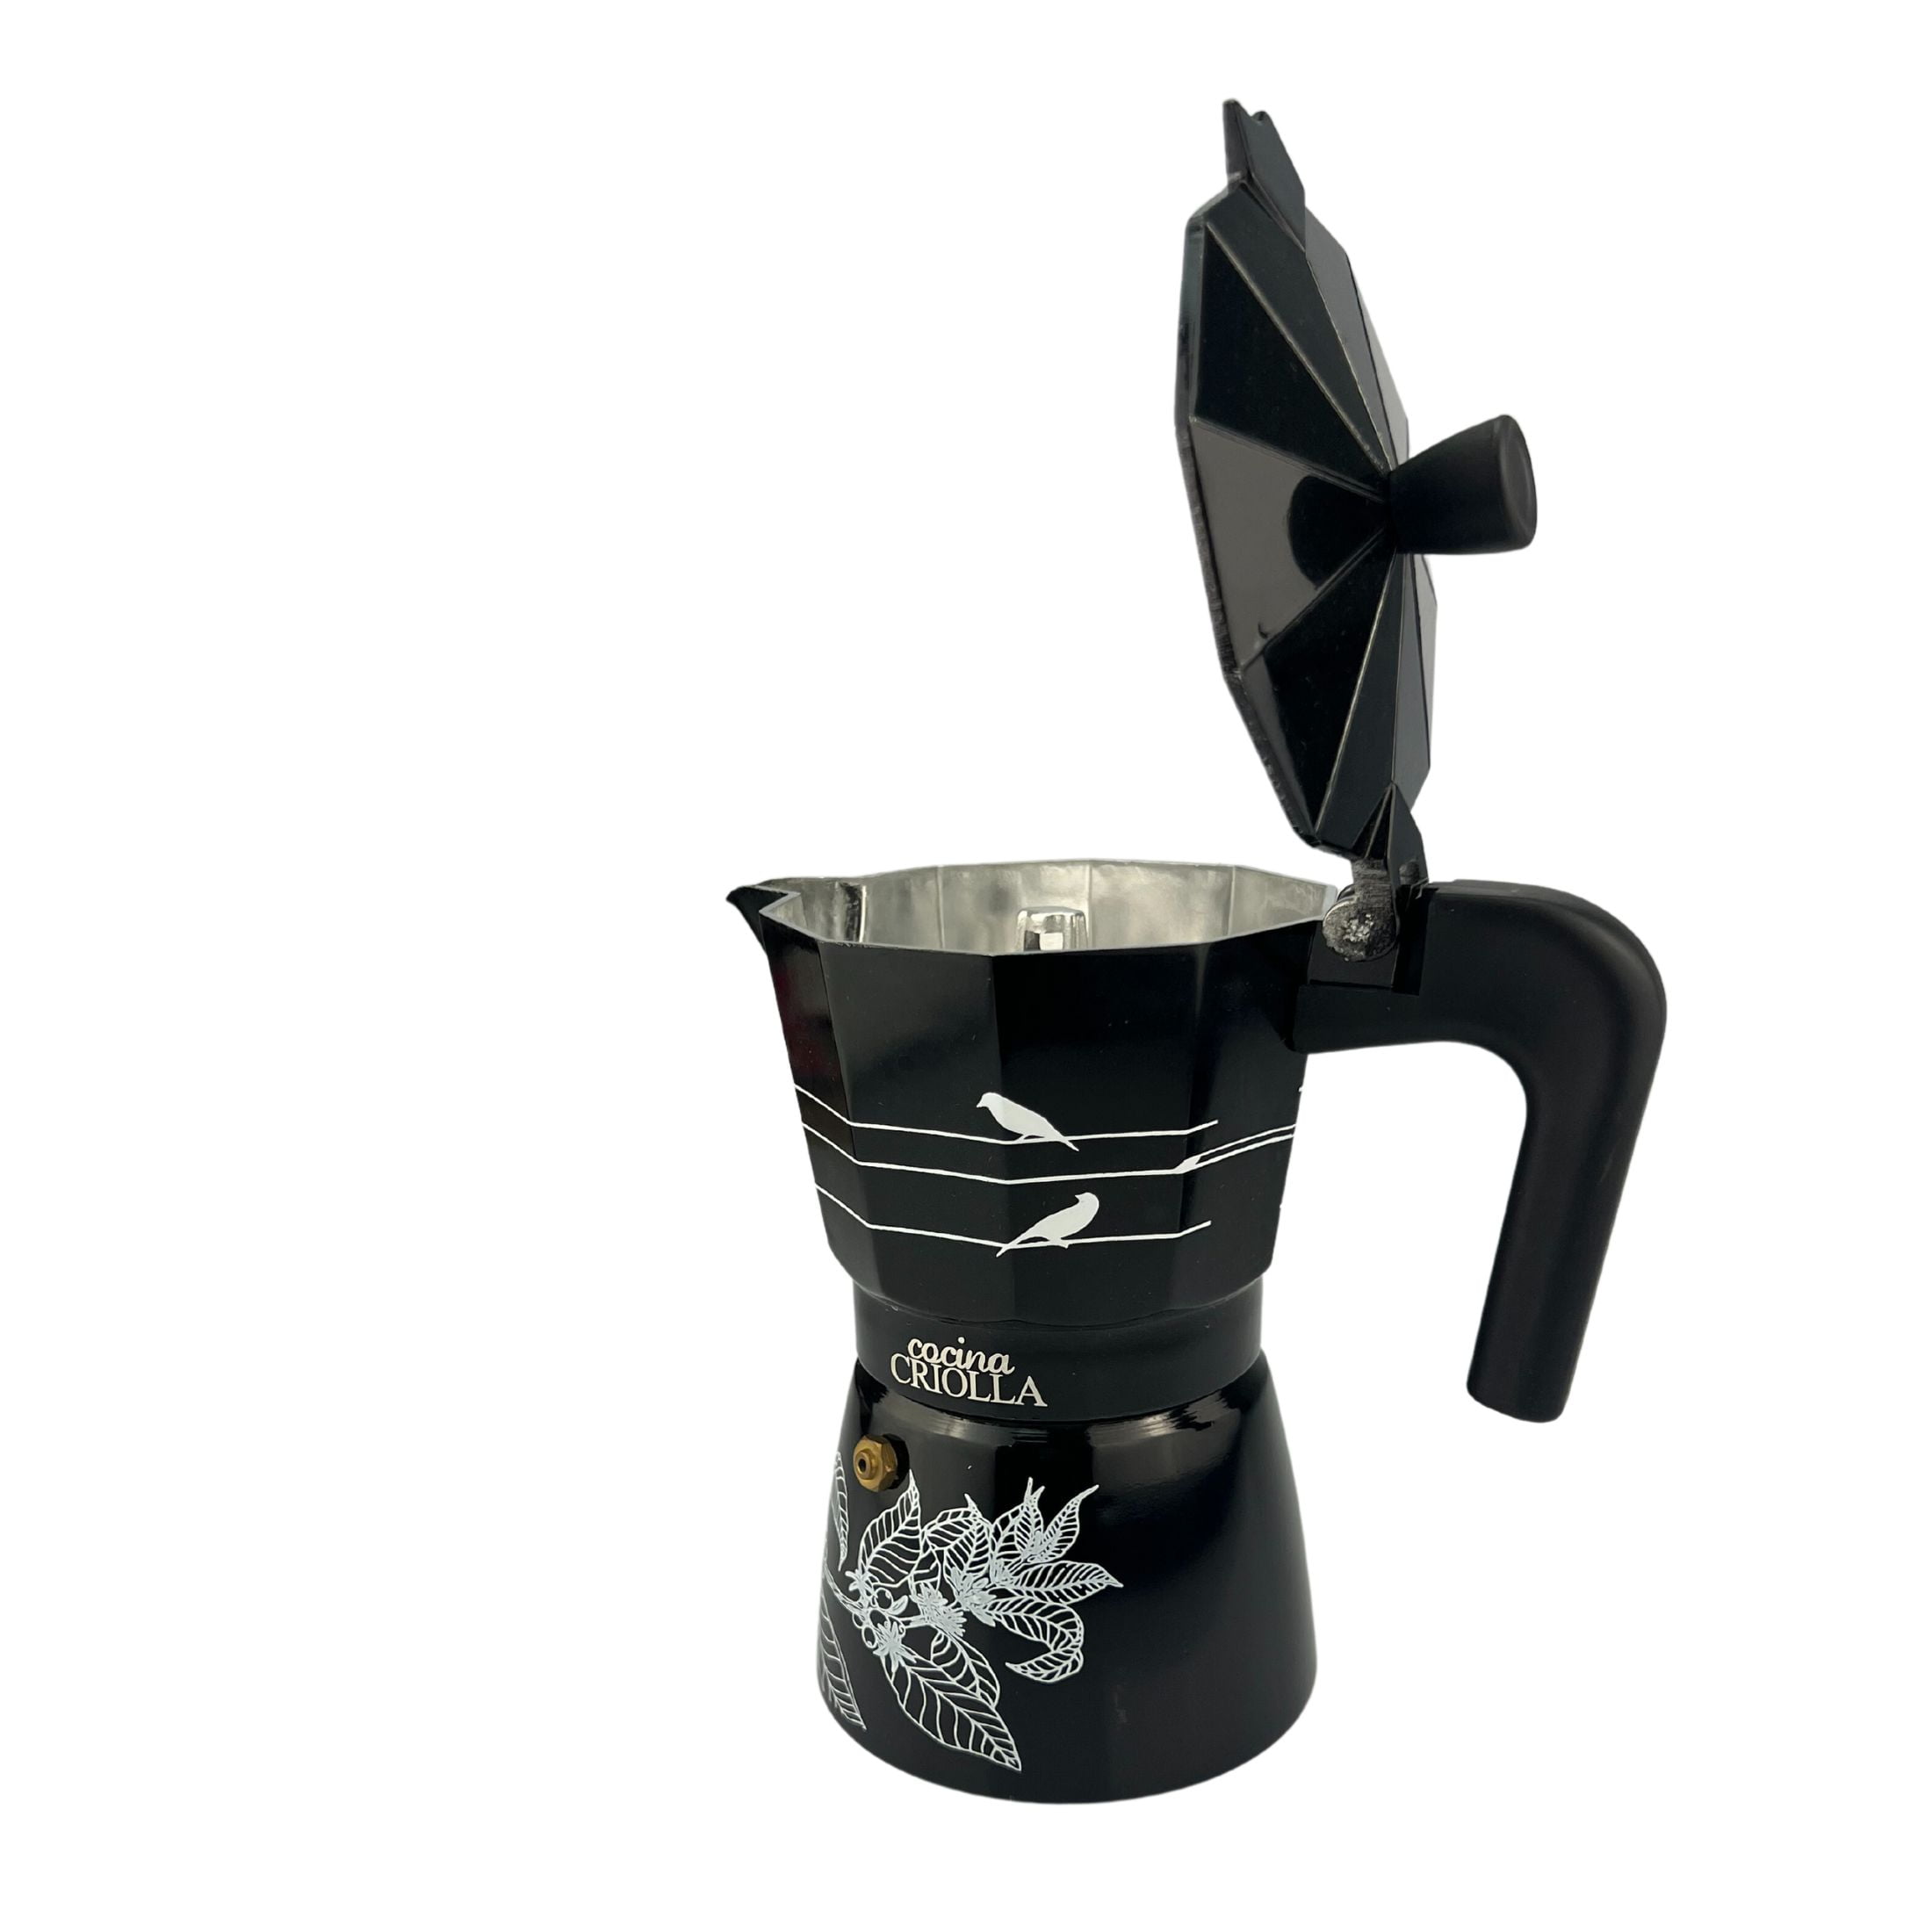 COCINA CRIOLLA 6 CUPS ALUMINIUM 5 MINUTES EXPRESS COFFEE MAKER GRECA DE CAFE